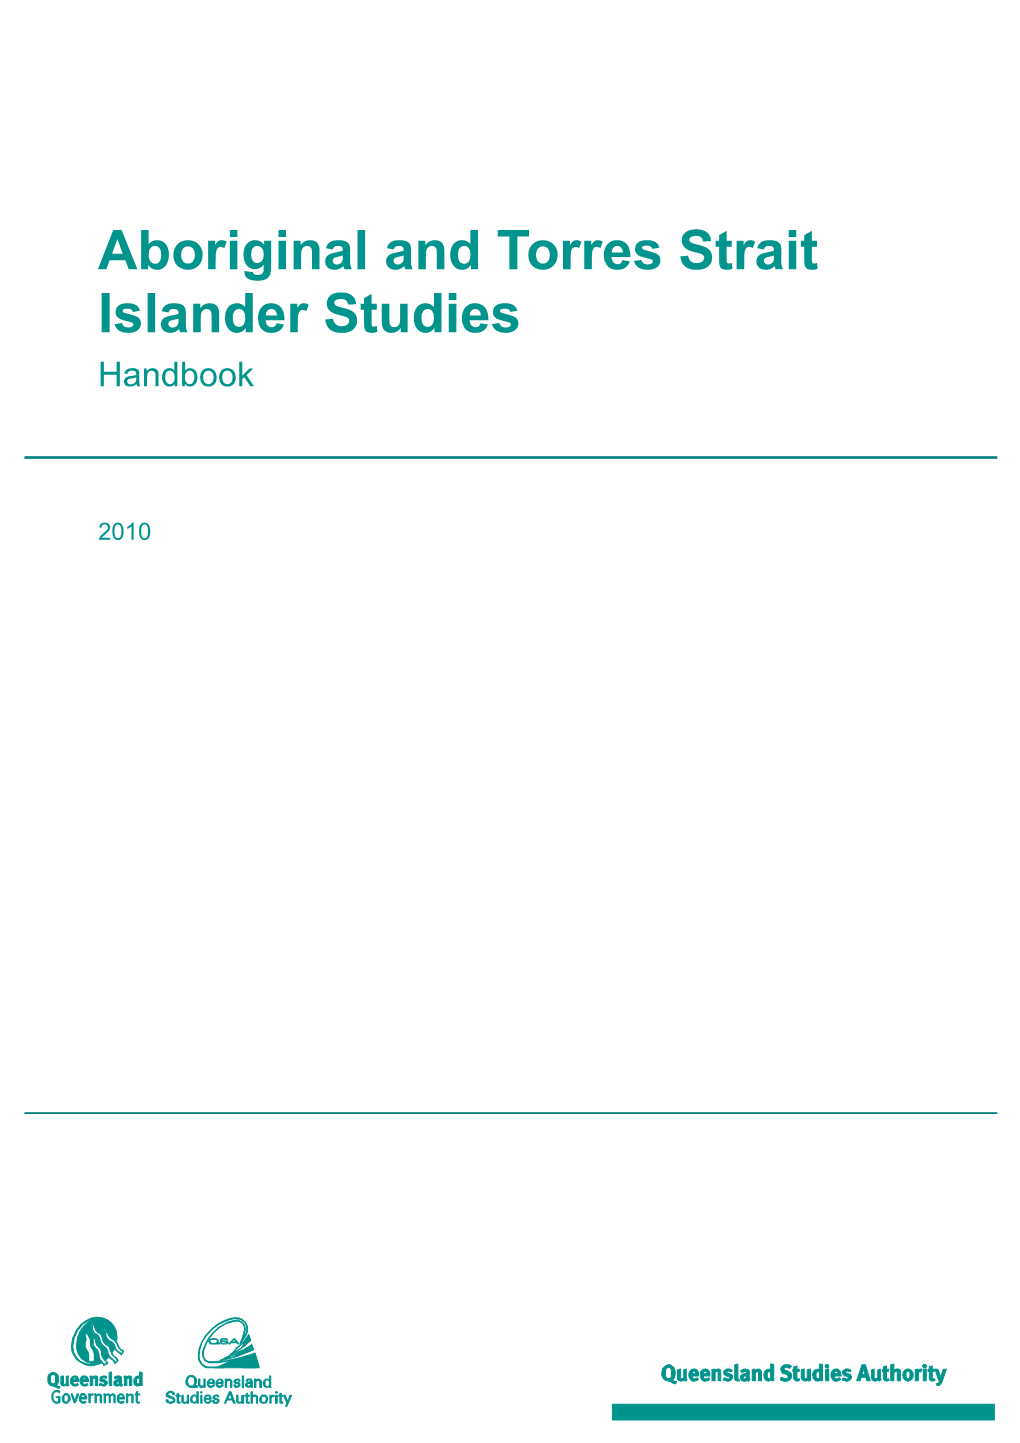 Aboriginal & Torres Strait Islander Studies Handbook 2010